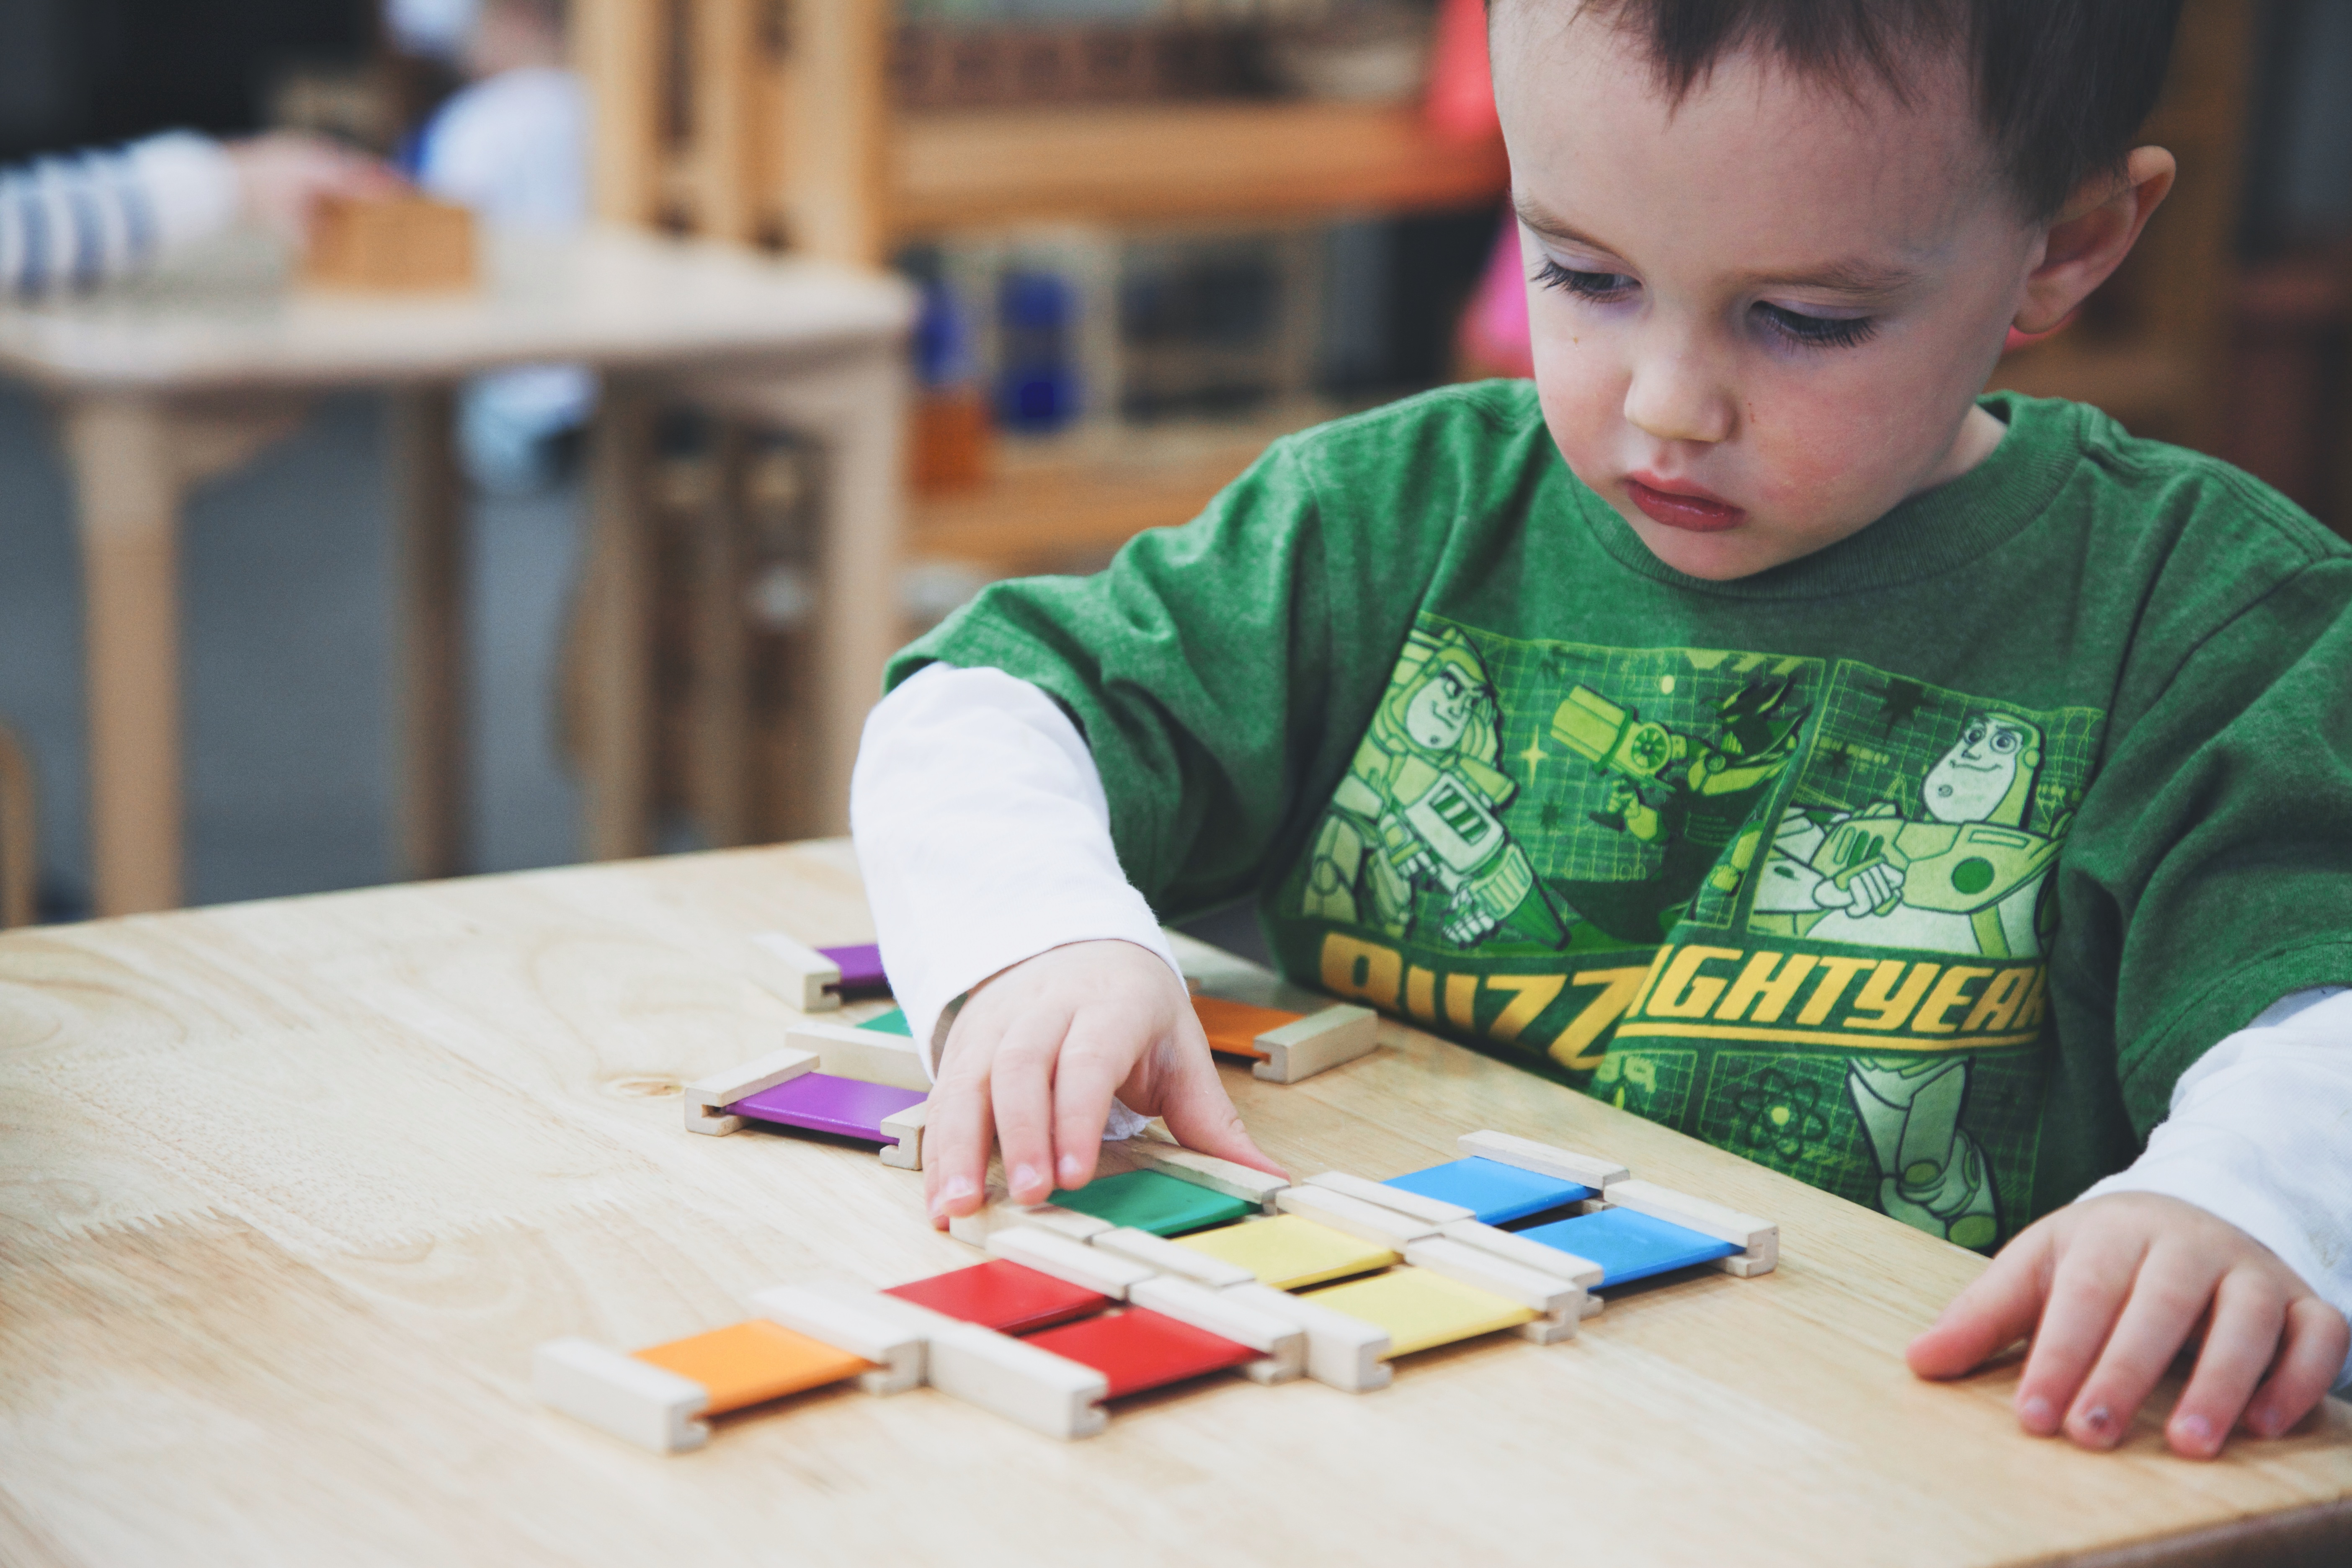 Color Tablets - Box #2 - Agaworld Montessori